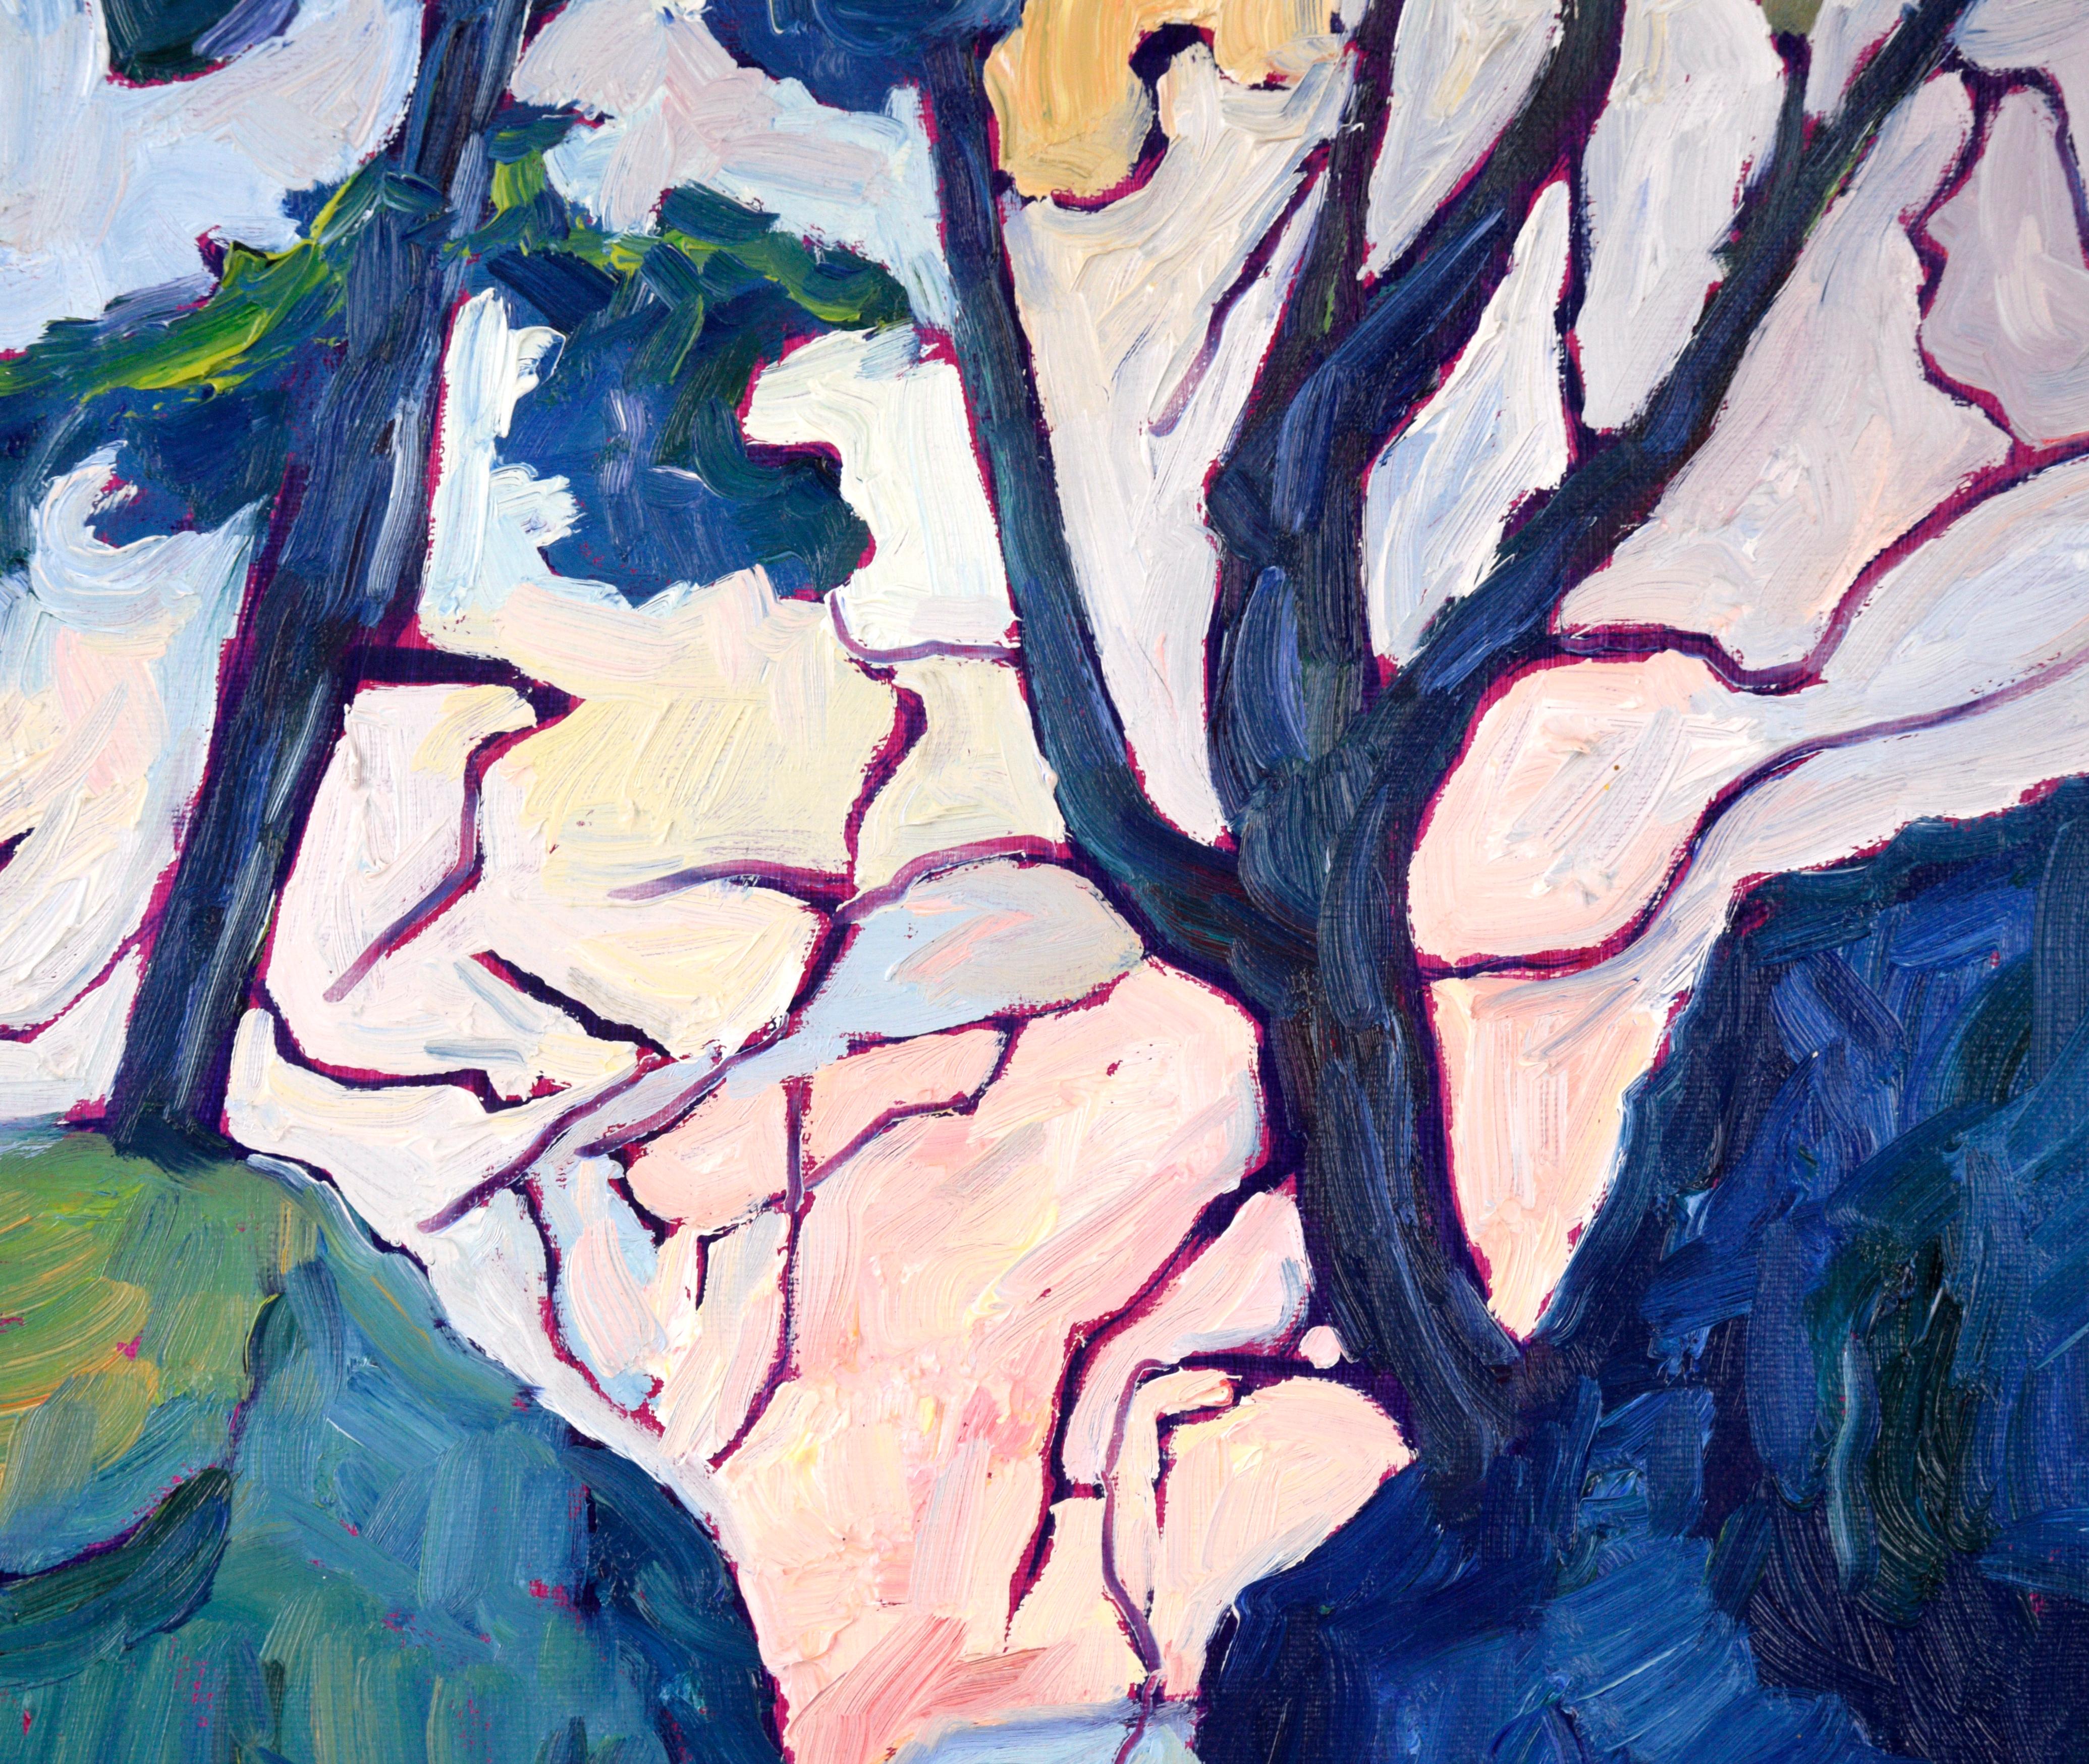 Paysage impressionniste « Tofino Mosaic » à l'huile sur toile

Paysage impressionniste contemporain coloré de Linda Yurgensen (canadienne, née en 1958). Cette pièce est composée de traits épais et assurés. Un chemin serpente à l'opposé du